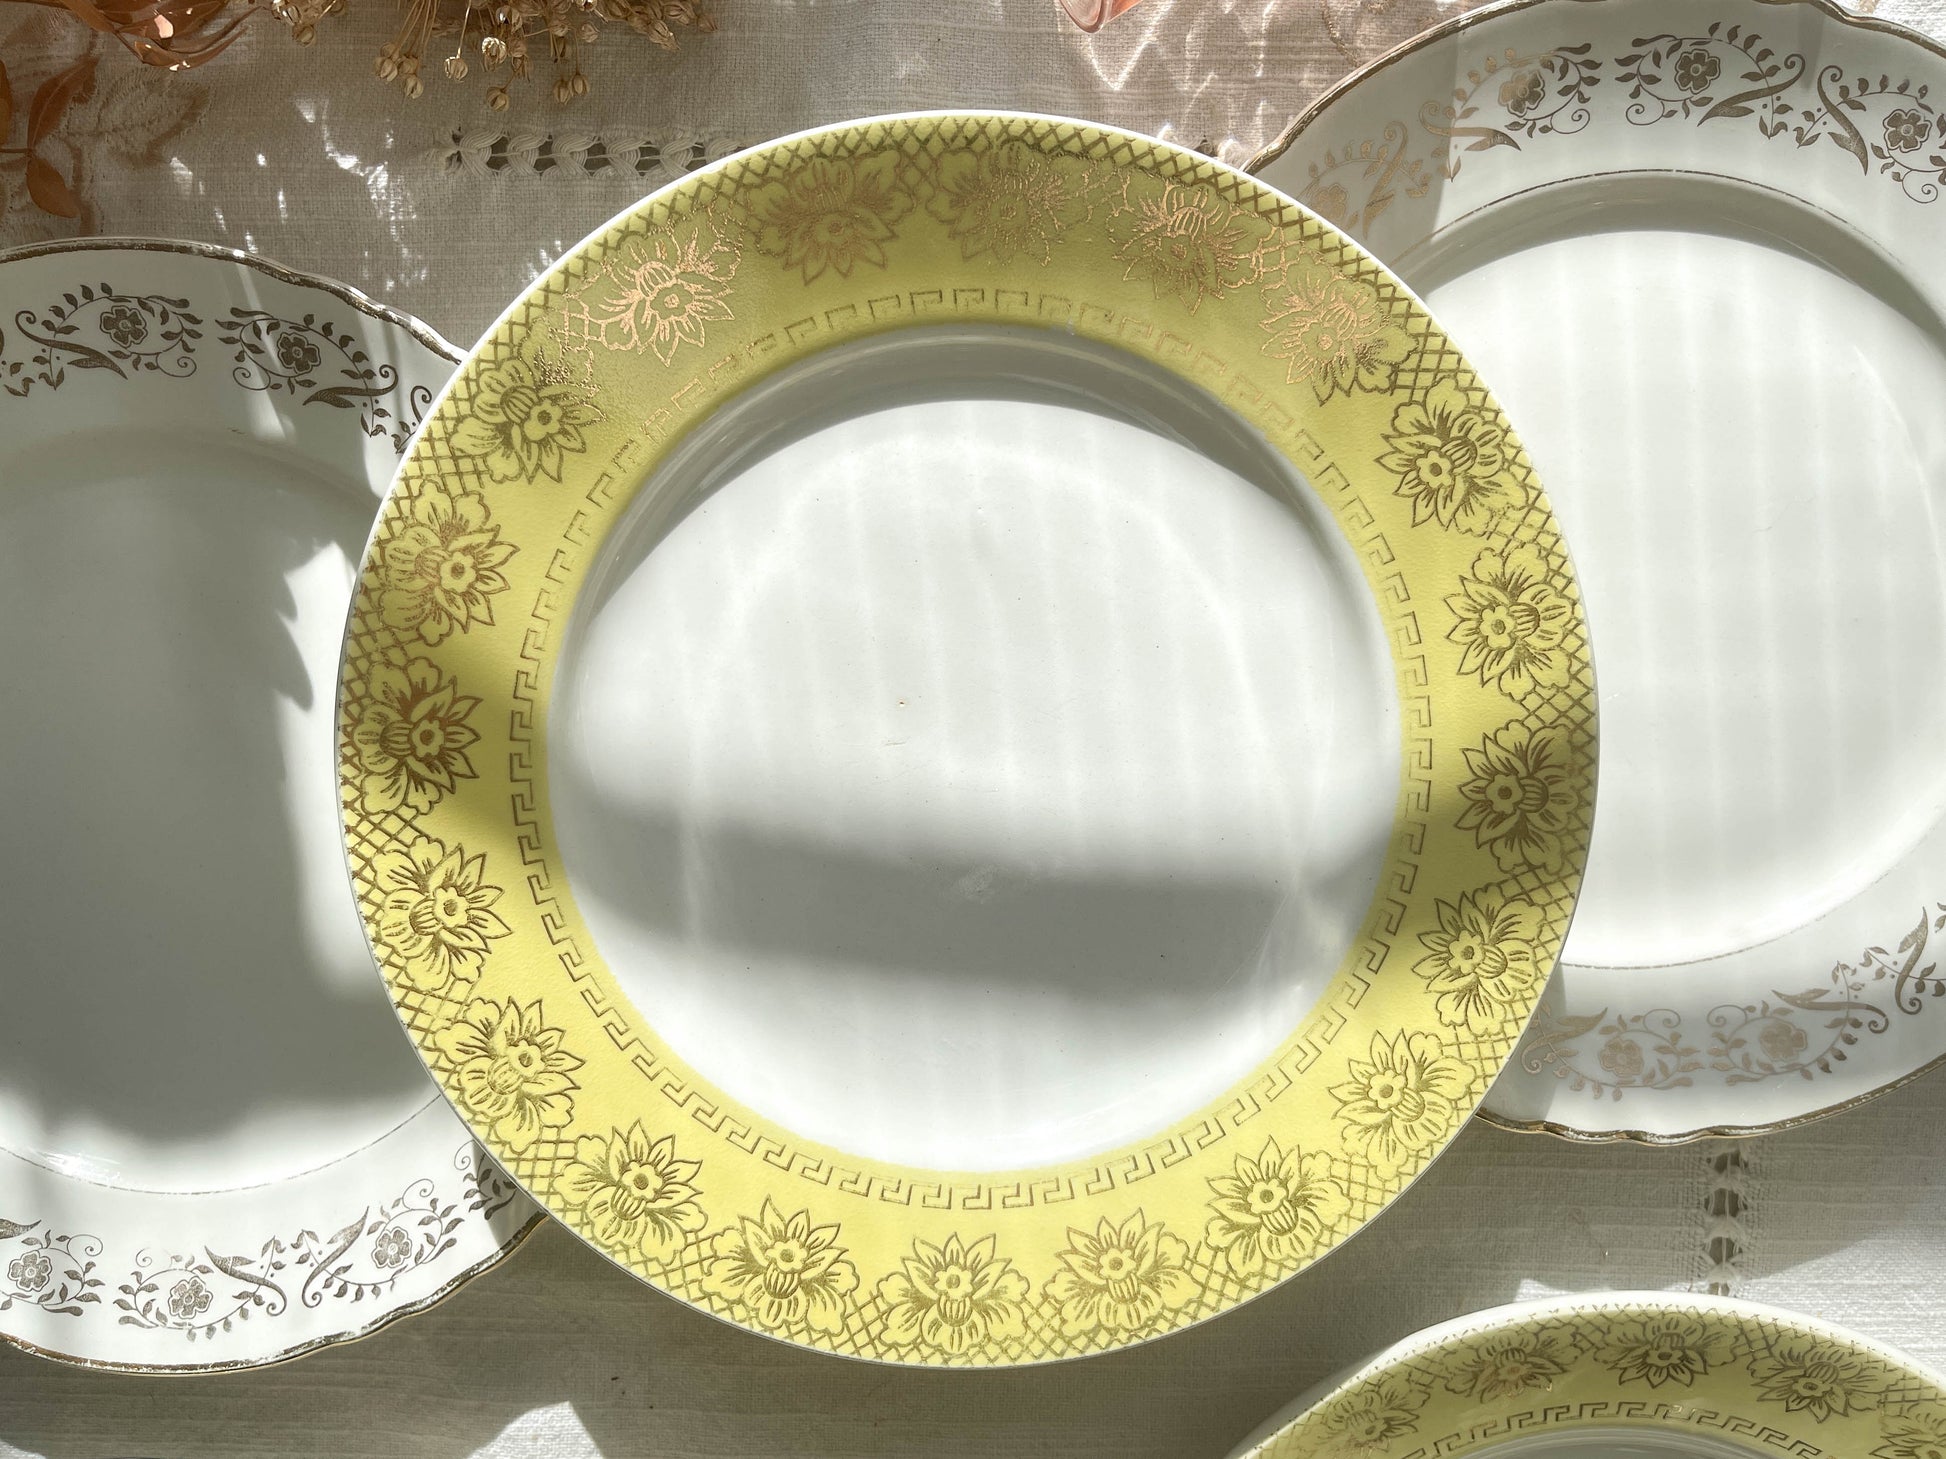 6 Assiettes vintage dépareillées blanches jaune dorée motifs fleuris